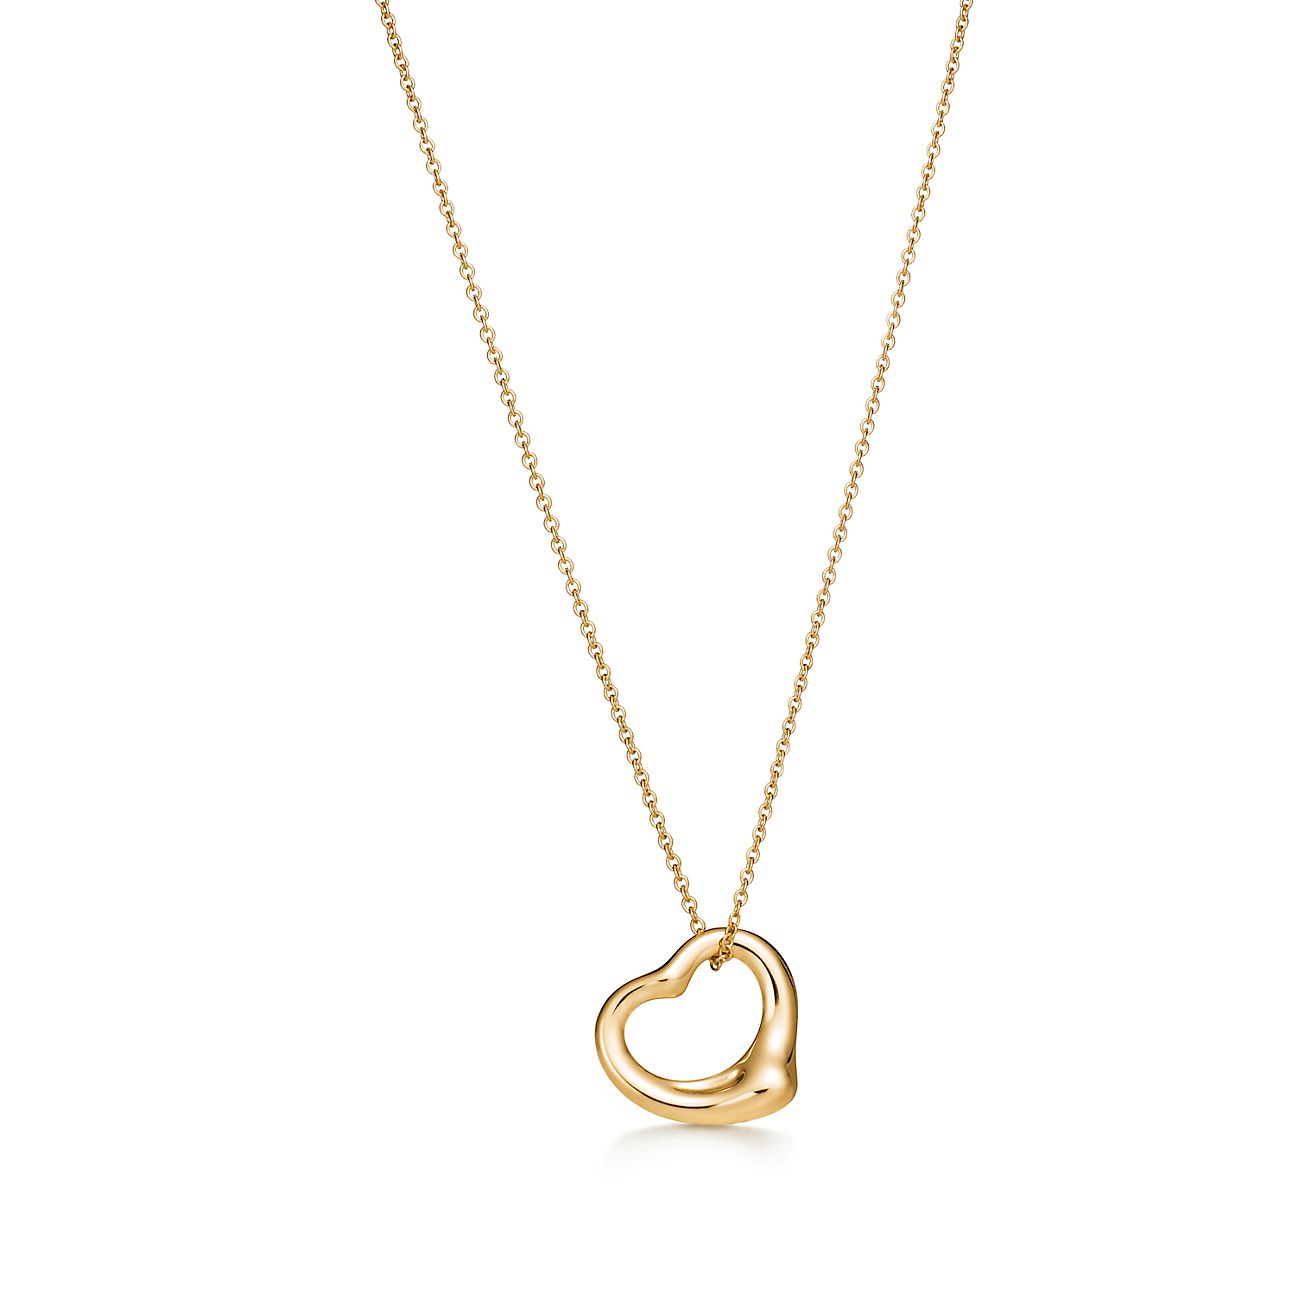 Tiffany & Co. 18K Yellow Gold Heart Lock Pendant Necklace Tiffany & Co.